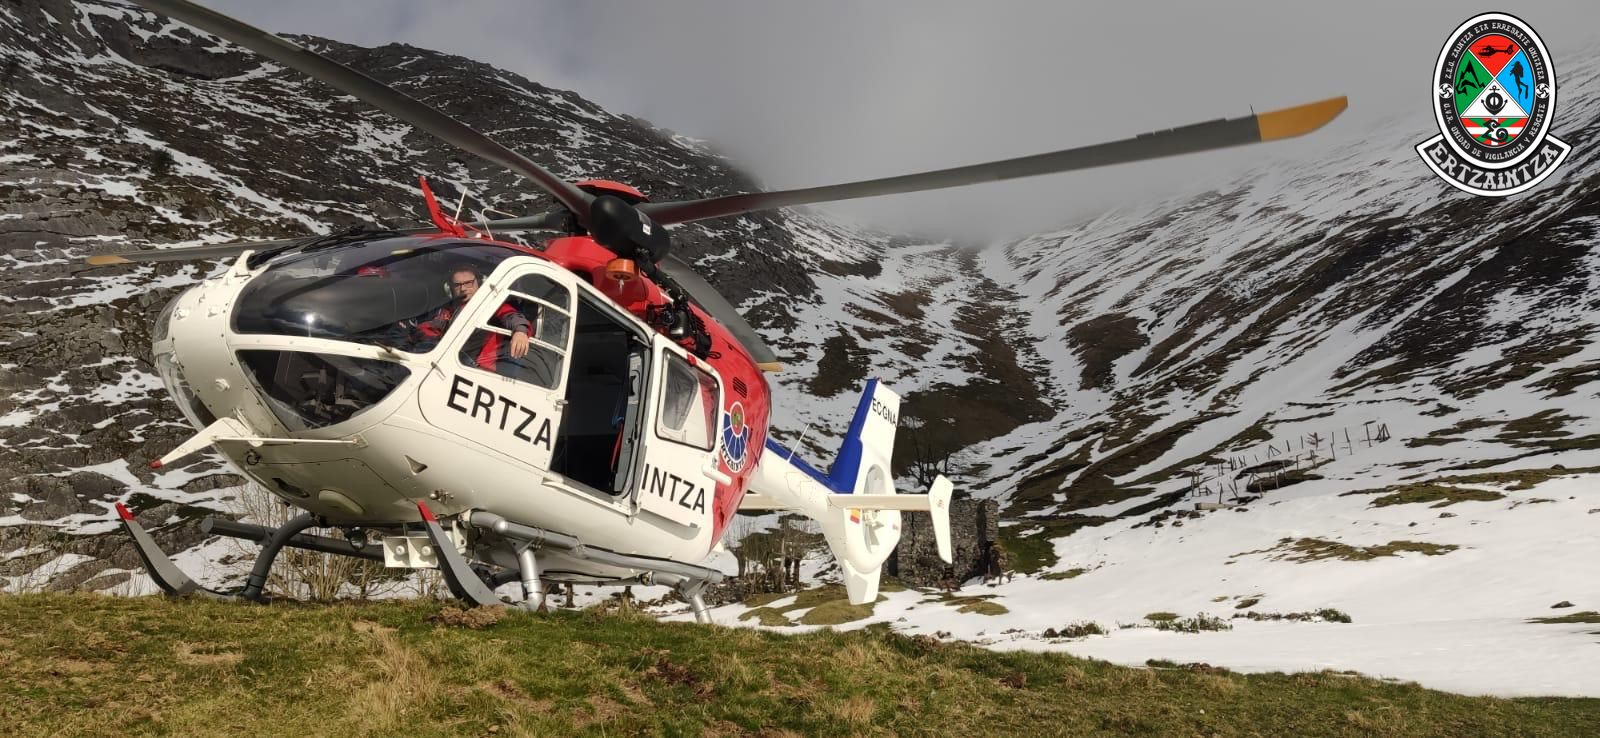 Amezketa2 - Emergencias de Euskadi rescata a un montañero accidentado en Amezketa